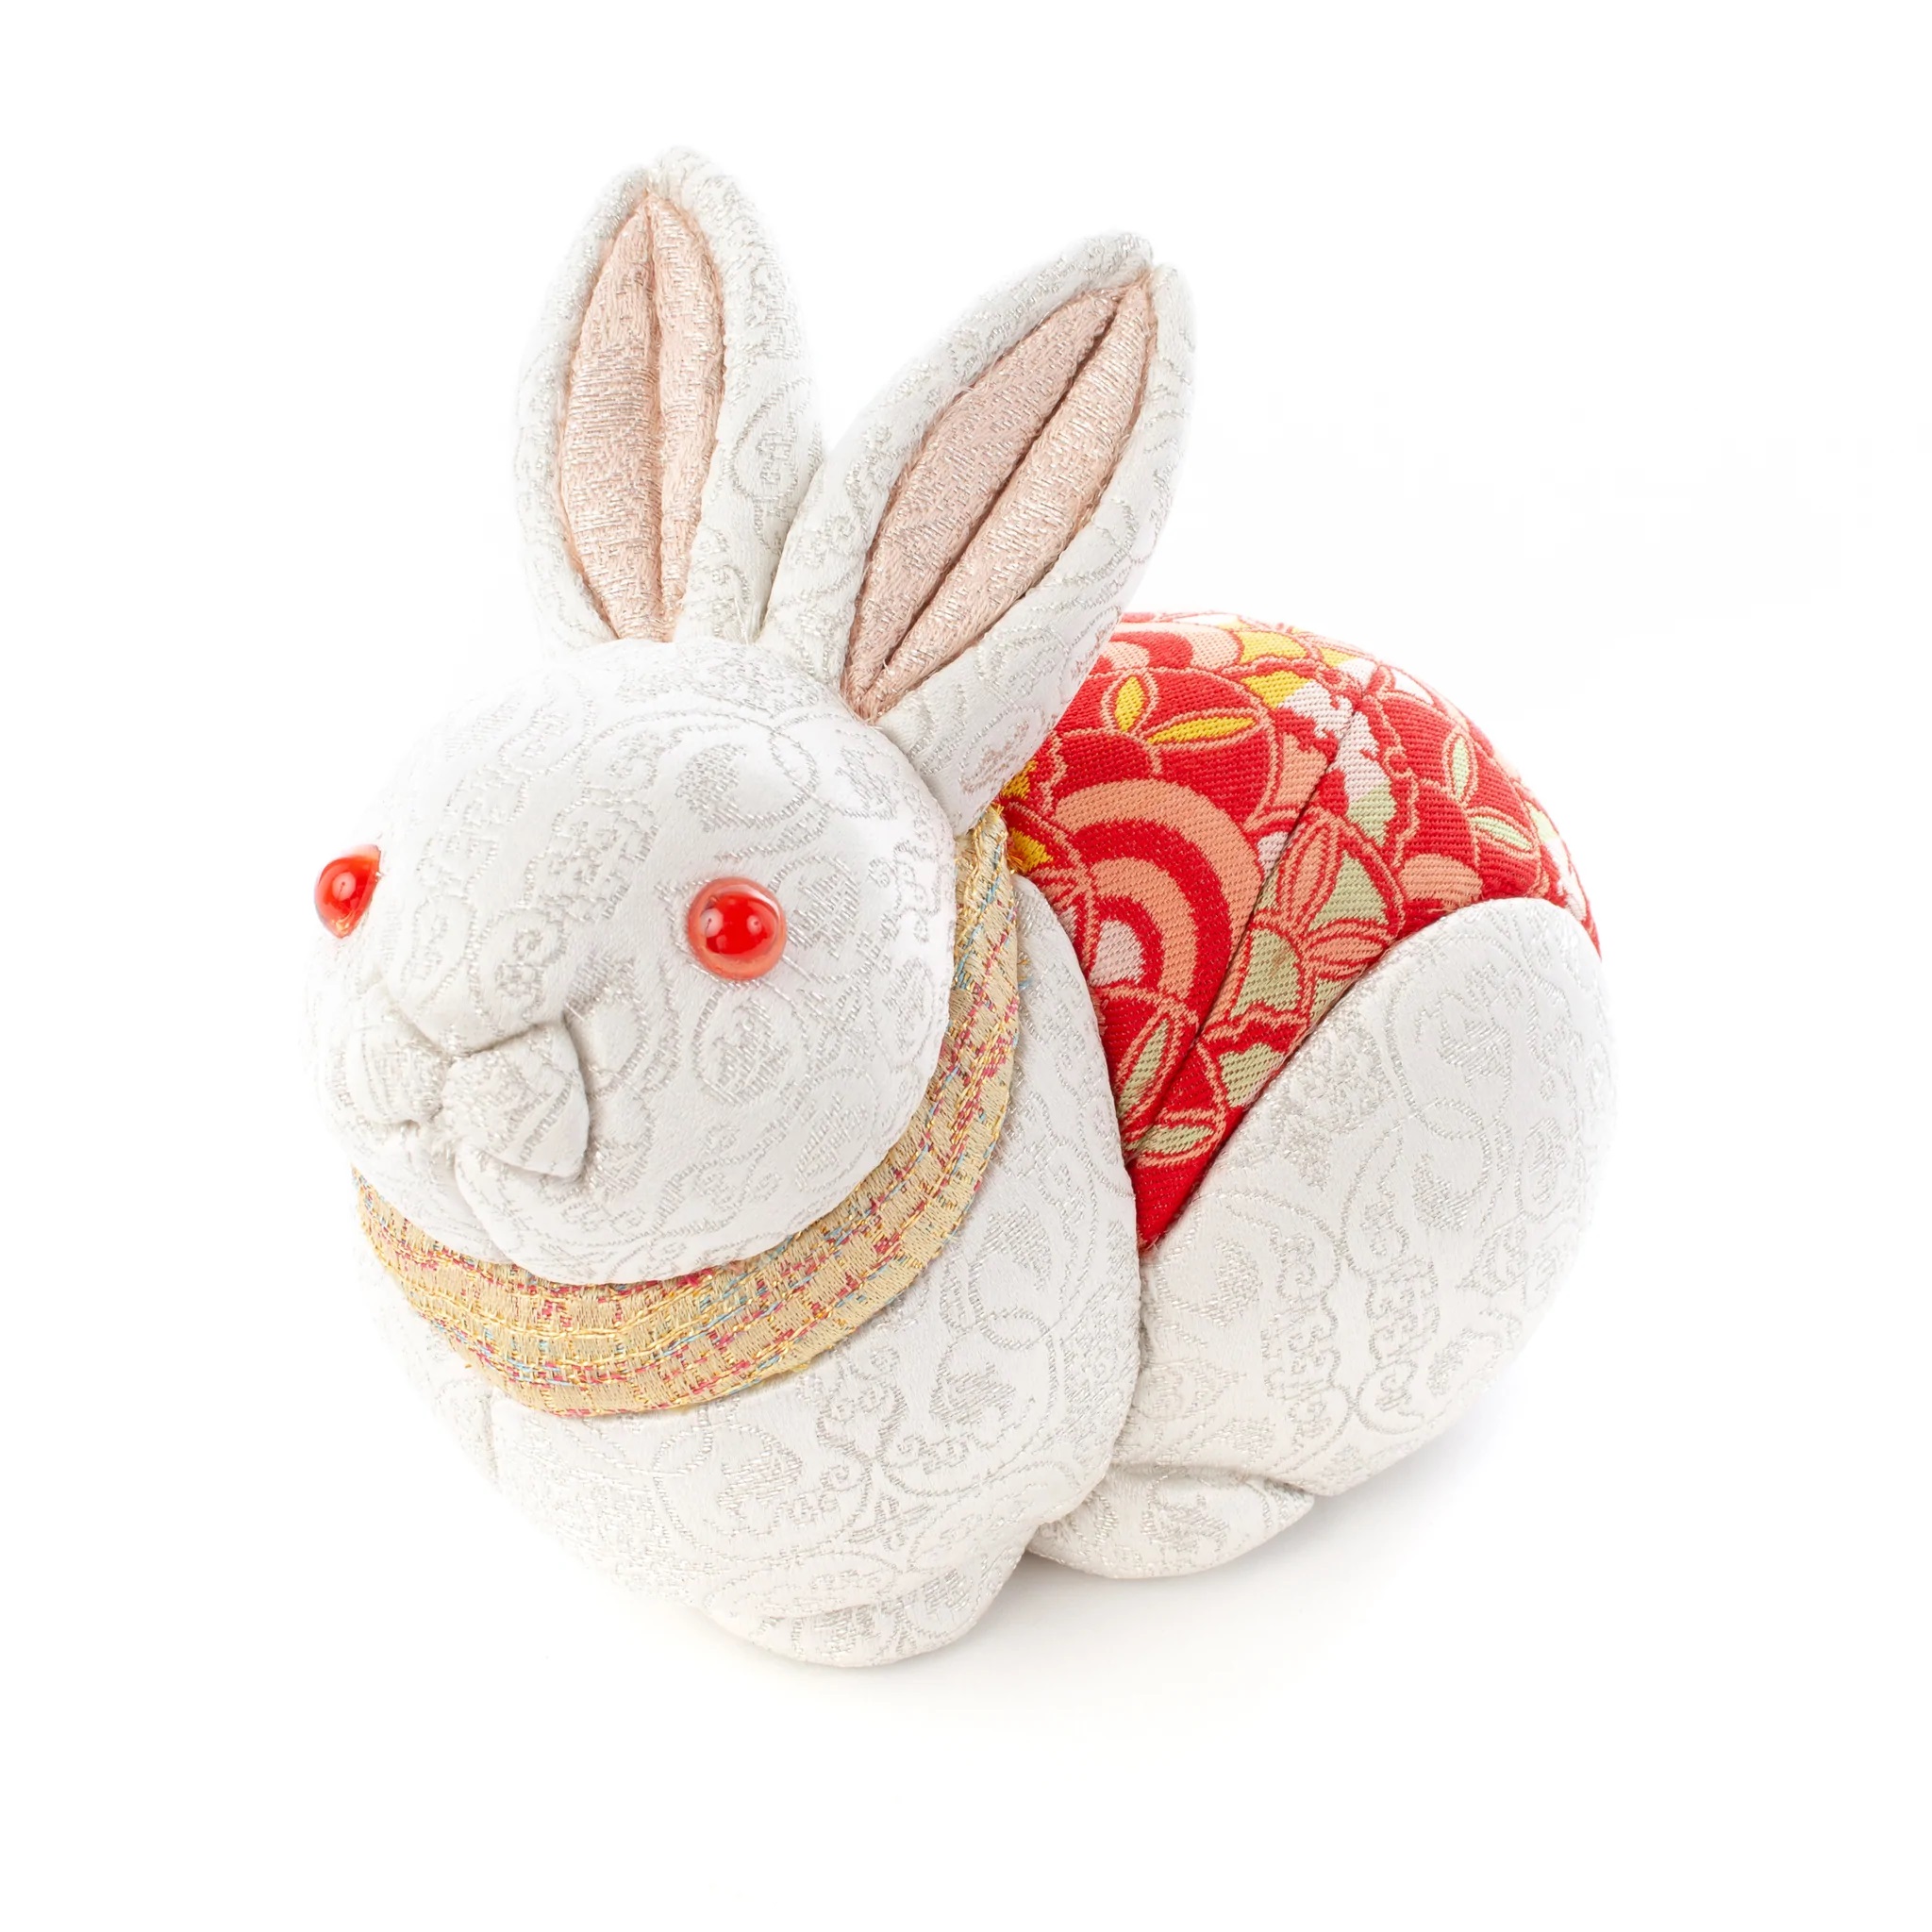 龍村美術織物の干支人形「卯」(うさぎ)が公式オンラインショップで 